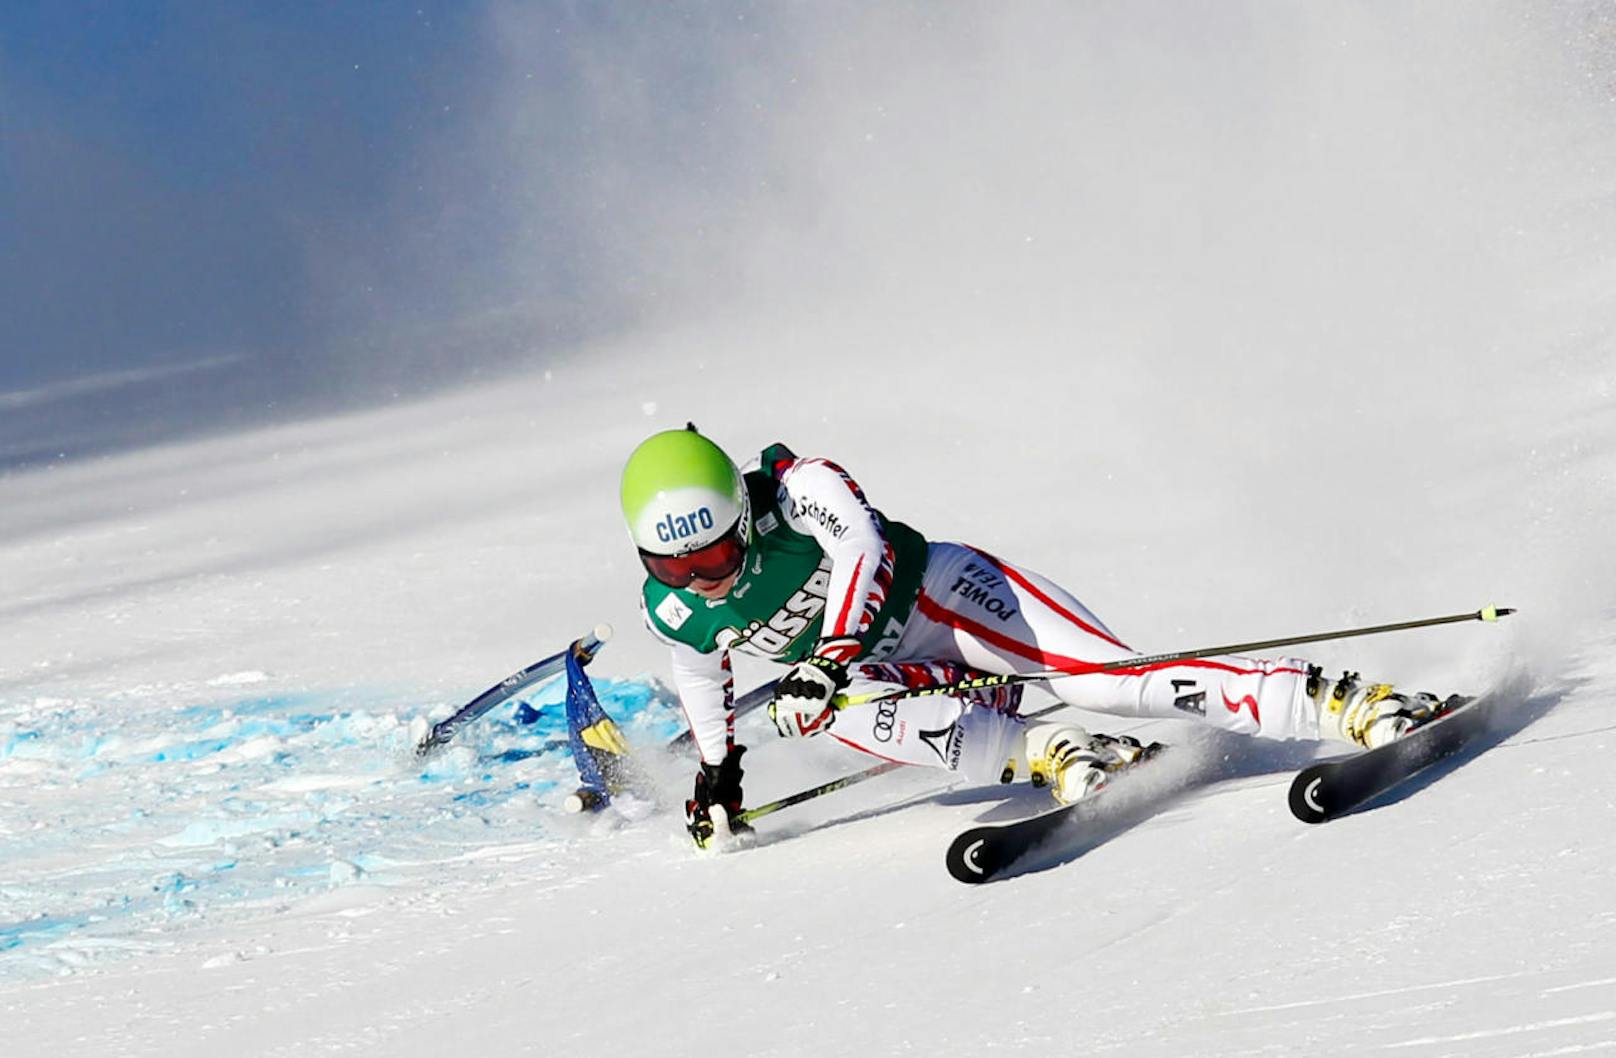 Endlich gelang auch im Weltcup der erste Sieg! Am 28. Dezember 2011 carvte Fenninger in Lienz im Riesentorlauf auf Rang eins. Stark: Sie beendete das Jahr im Gesamtweltcup auf Rang fünf.